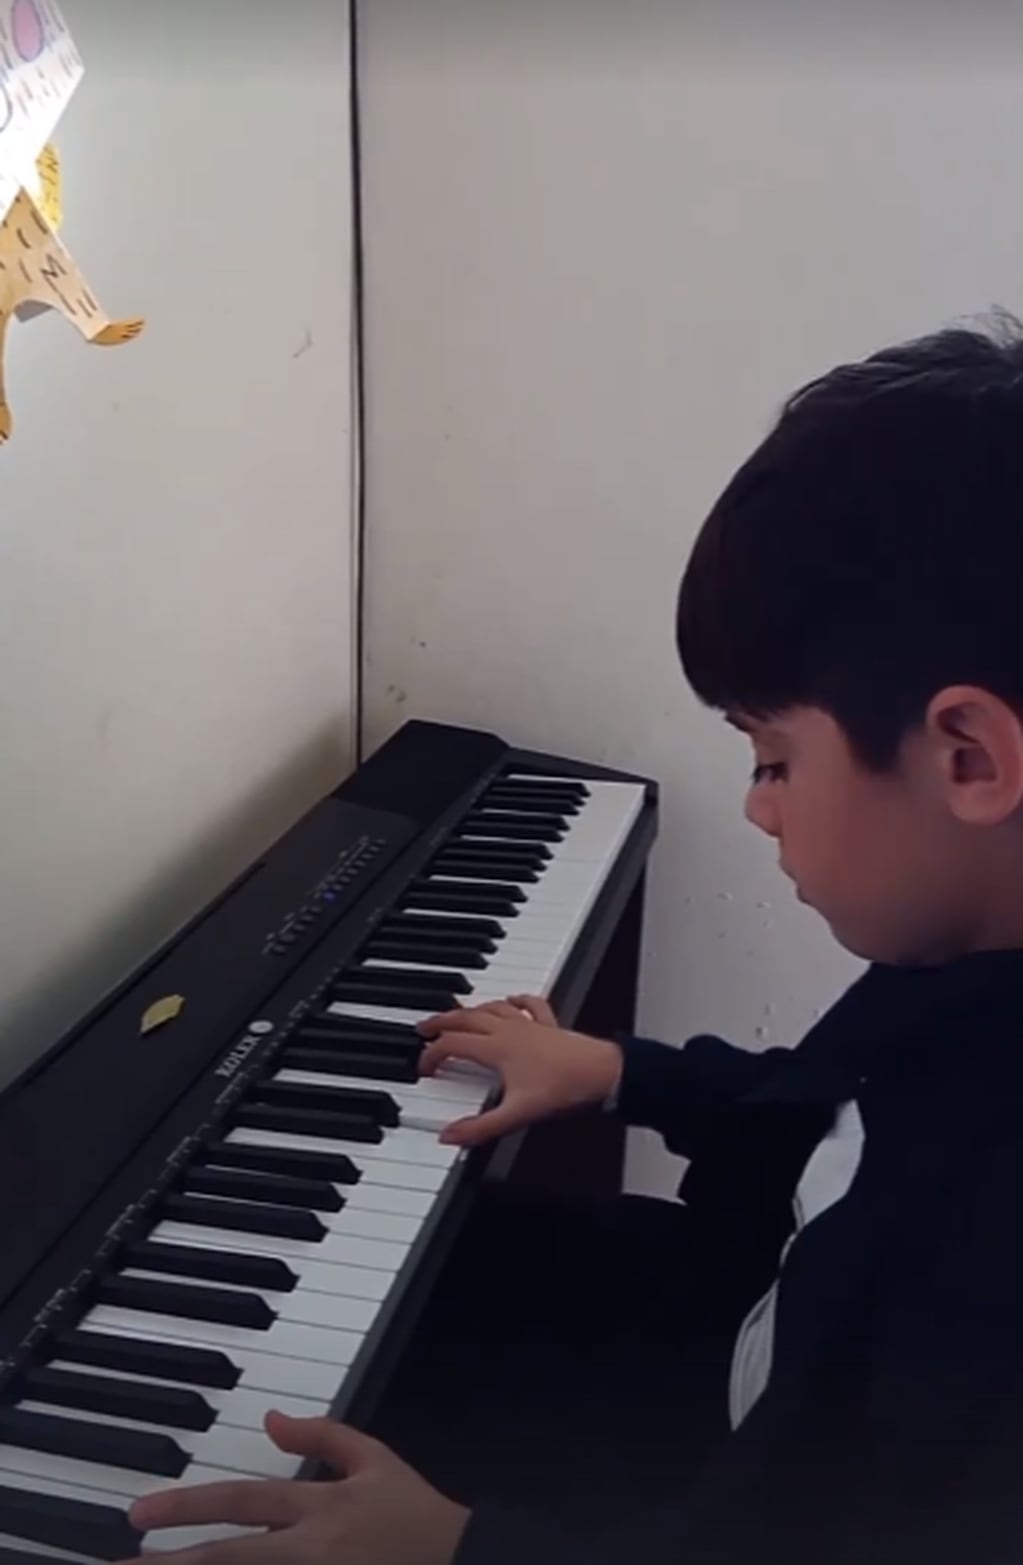 El niño toca el piano desde los 8 años.